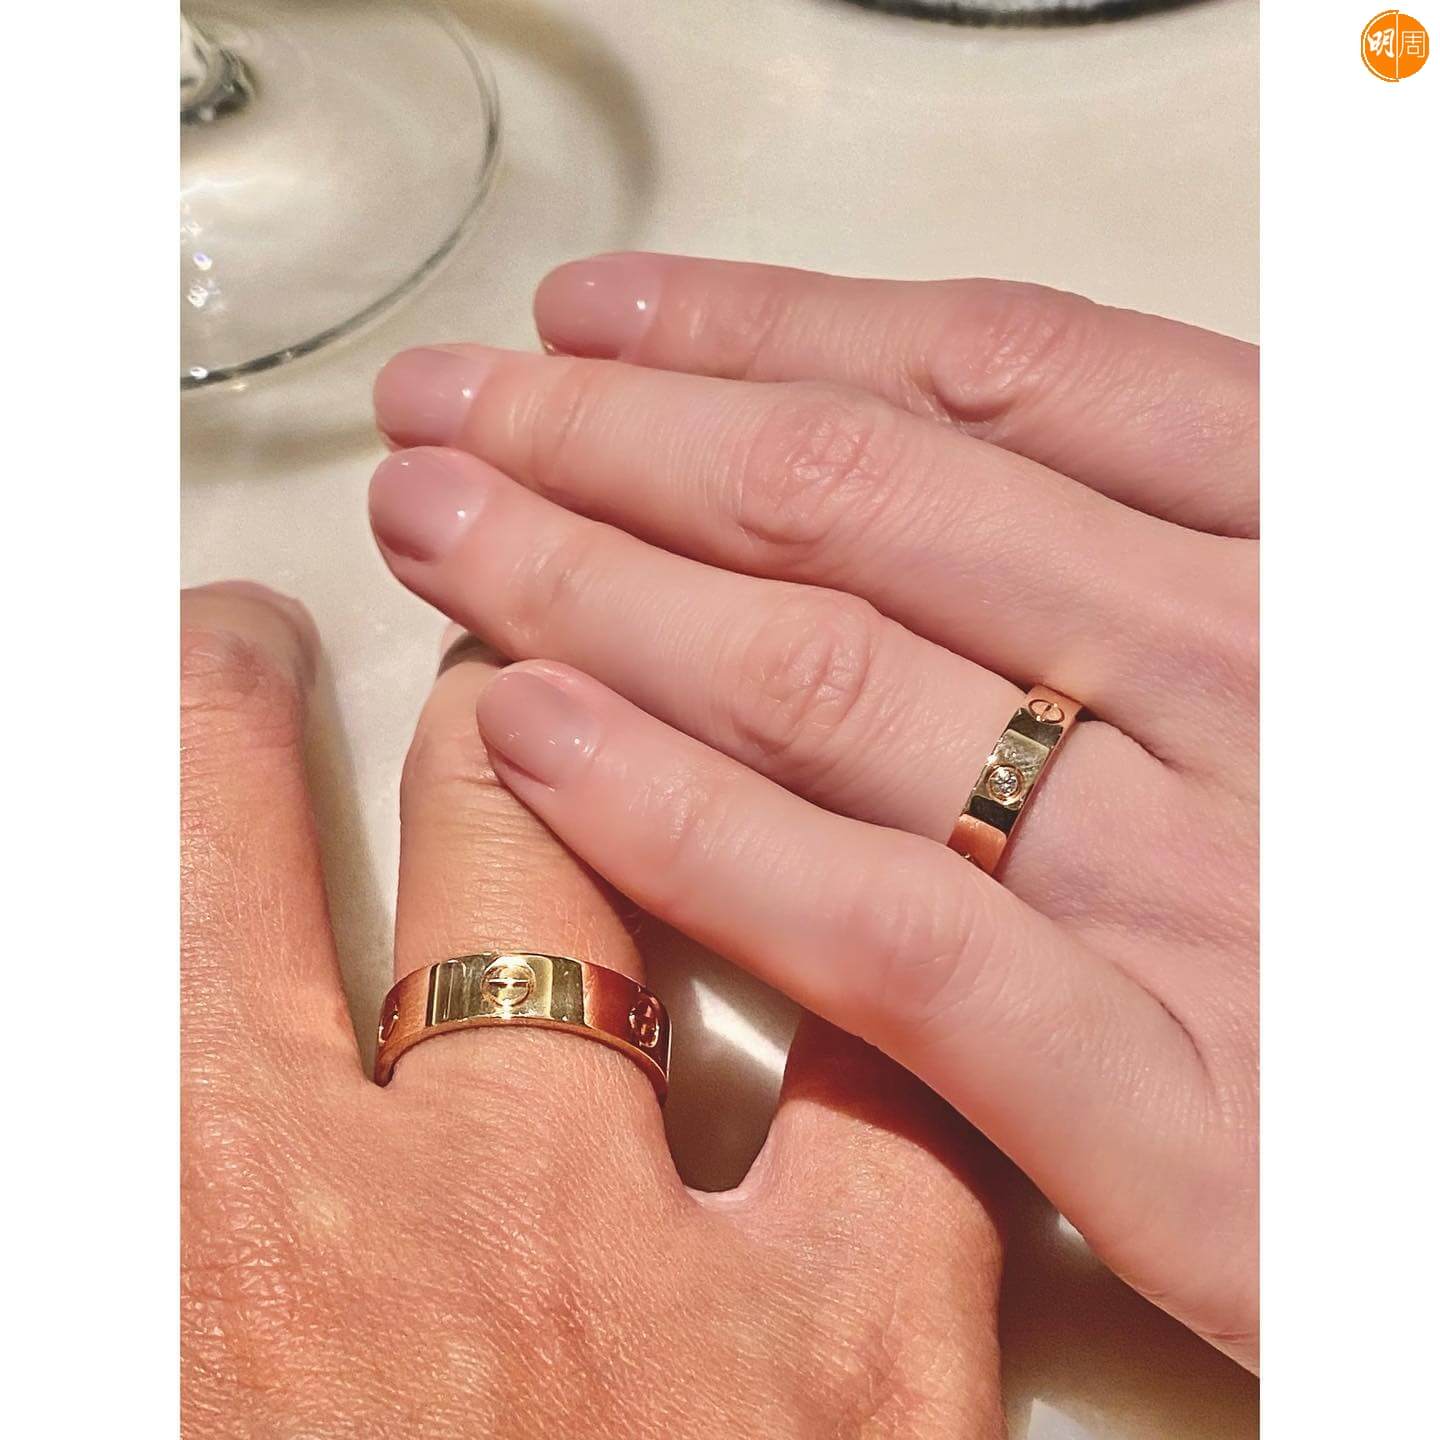 結婚當日，陳喬恩只公開二人戴婚戒的手部照。